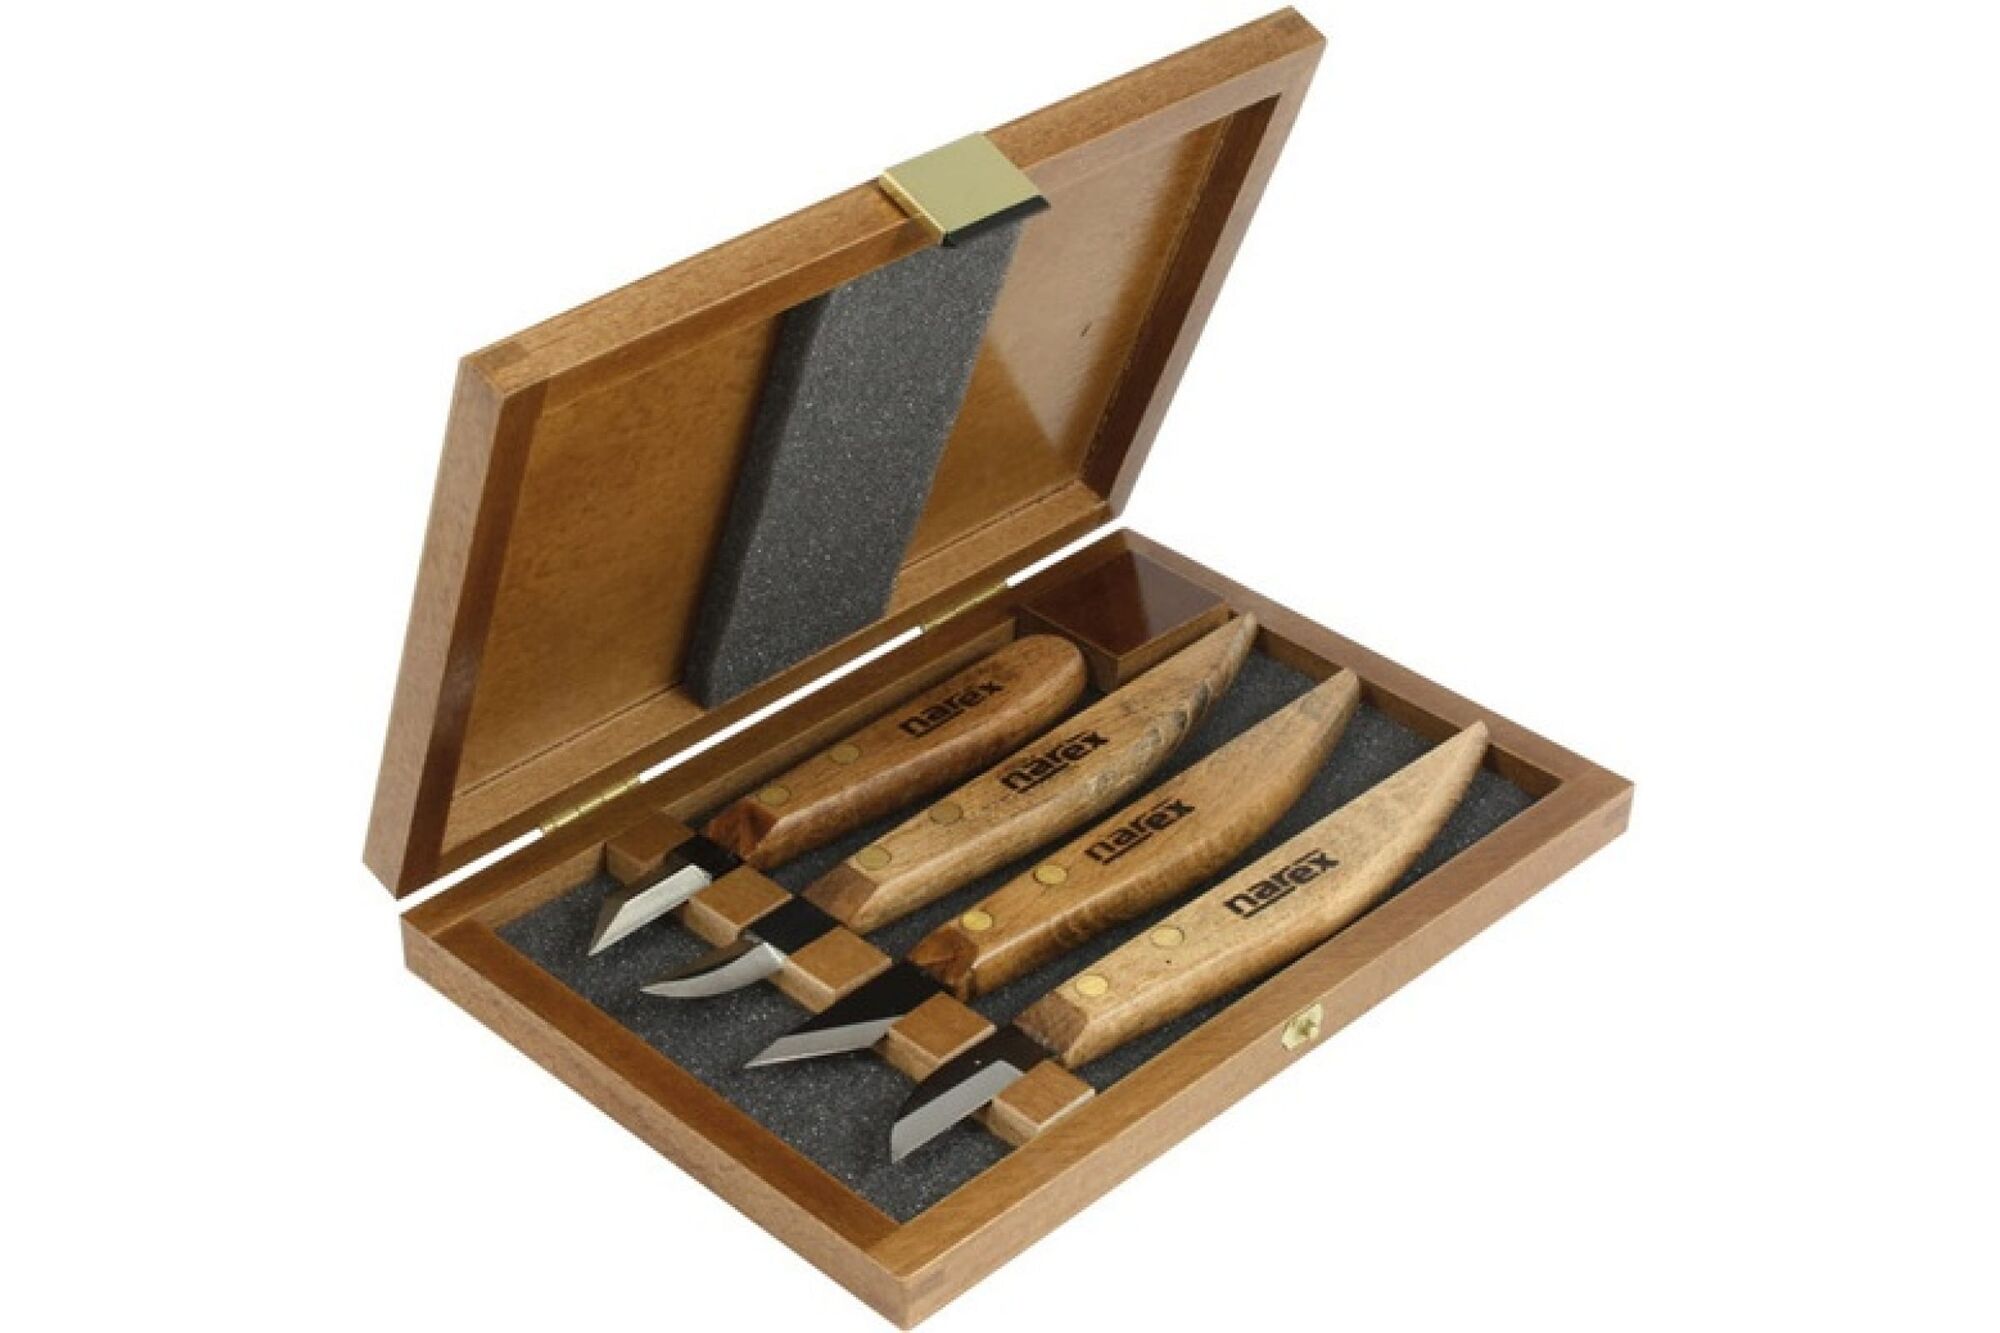 Набор из 4 ножей в деревянной коробке NAREX Profi 869100